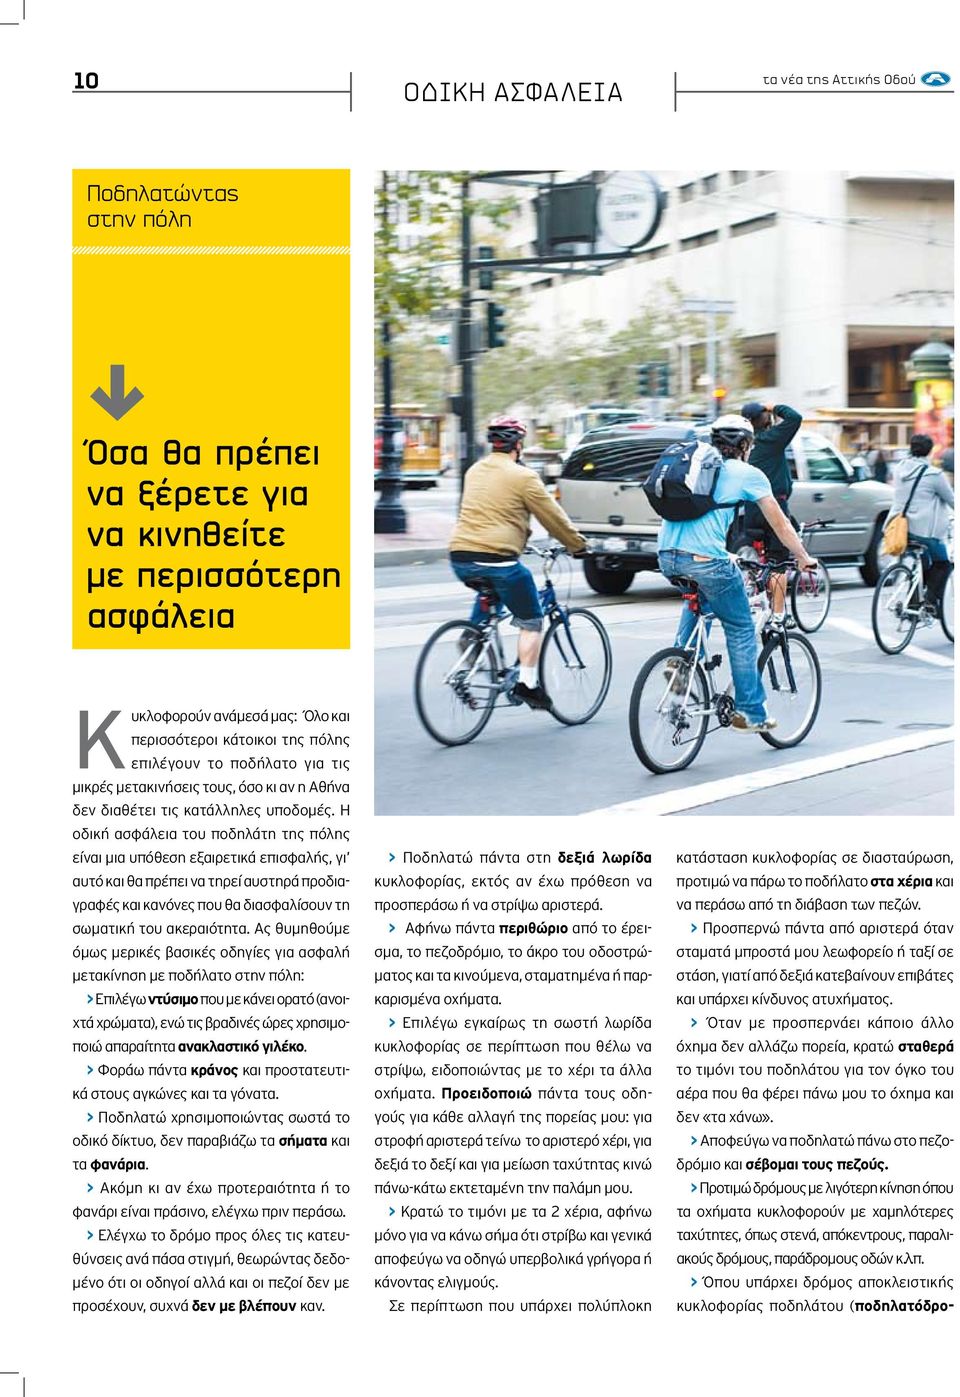 Η οδική ασφάλεια του ποδηλάτη της πόλης είναι μια υπόθεση εξαιρετικά επισφαλής, γι αυτό και θα πρέπει να τηρεί αυστηρά προδιαγραφές και κανόνες που θα διασφαλίσουν τη σωματική του ακεραιότητα.